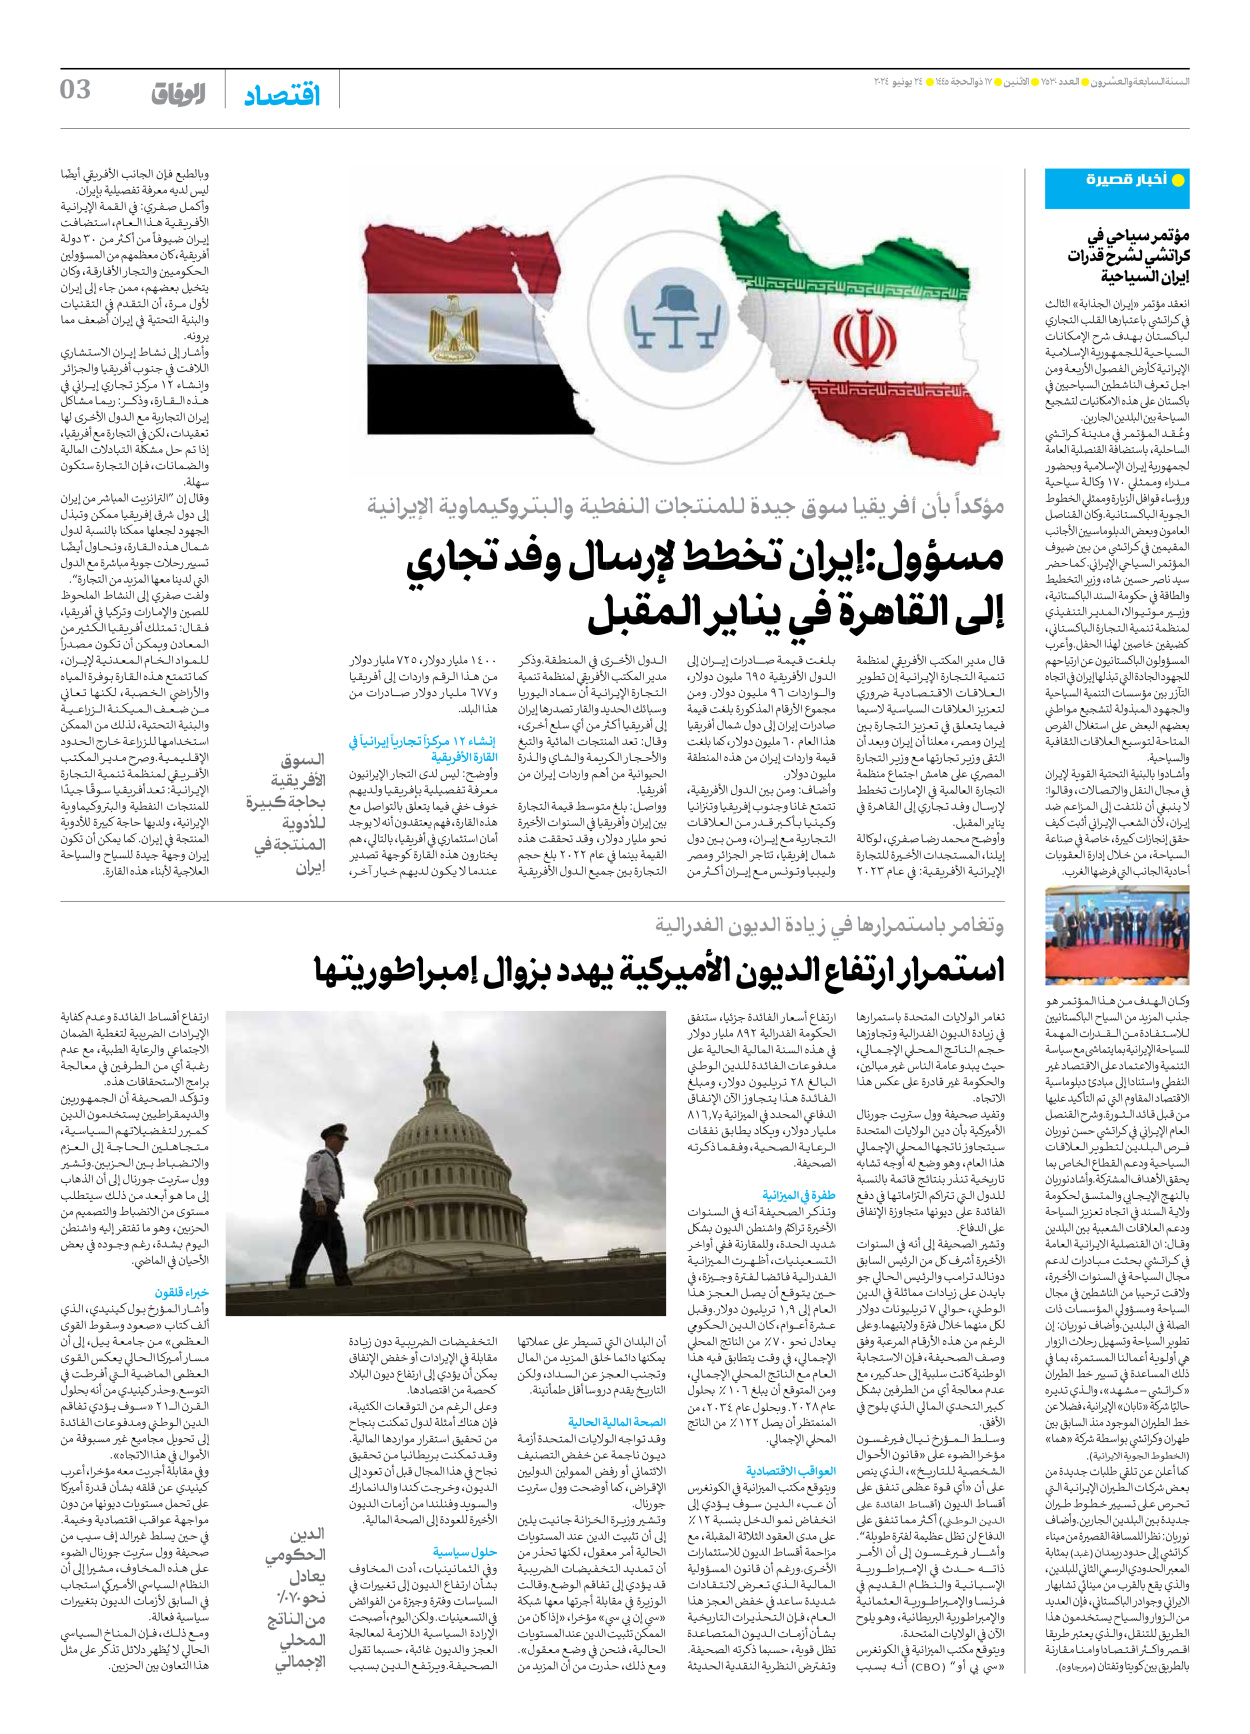 صحیفة ایران الدولیة الوفاق - العدد سبعة آلاف وخمسمائة وثلاثون - ٢٤ يونيو ٢٠٢٤ - الصفحة ۳